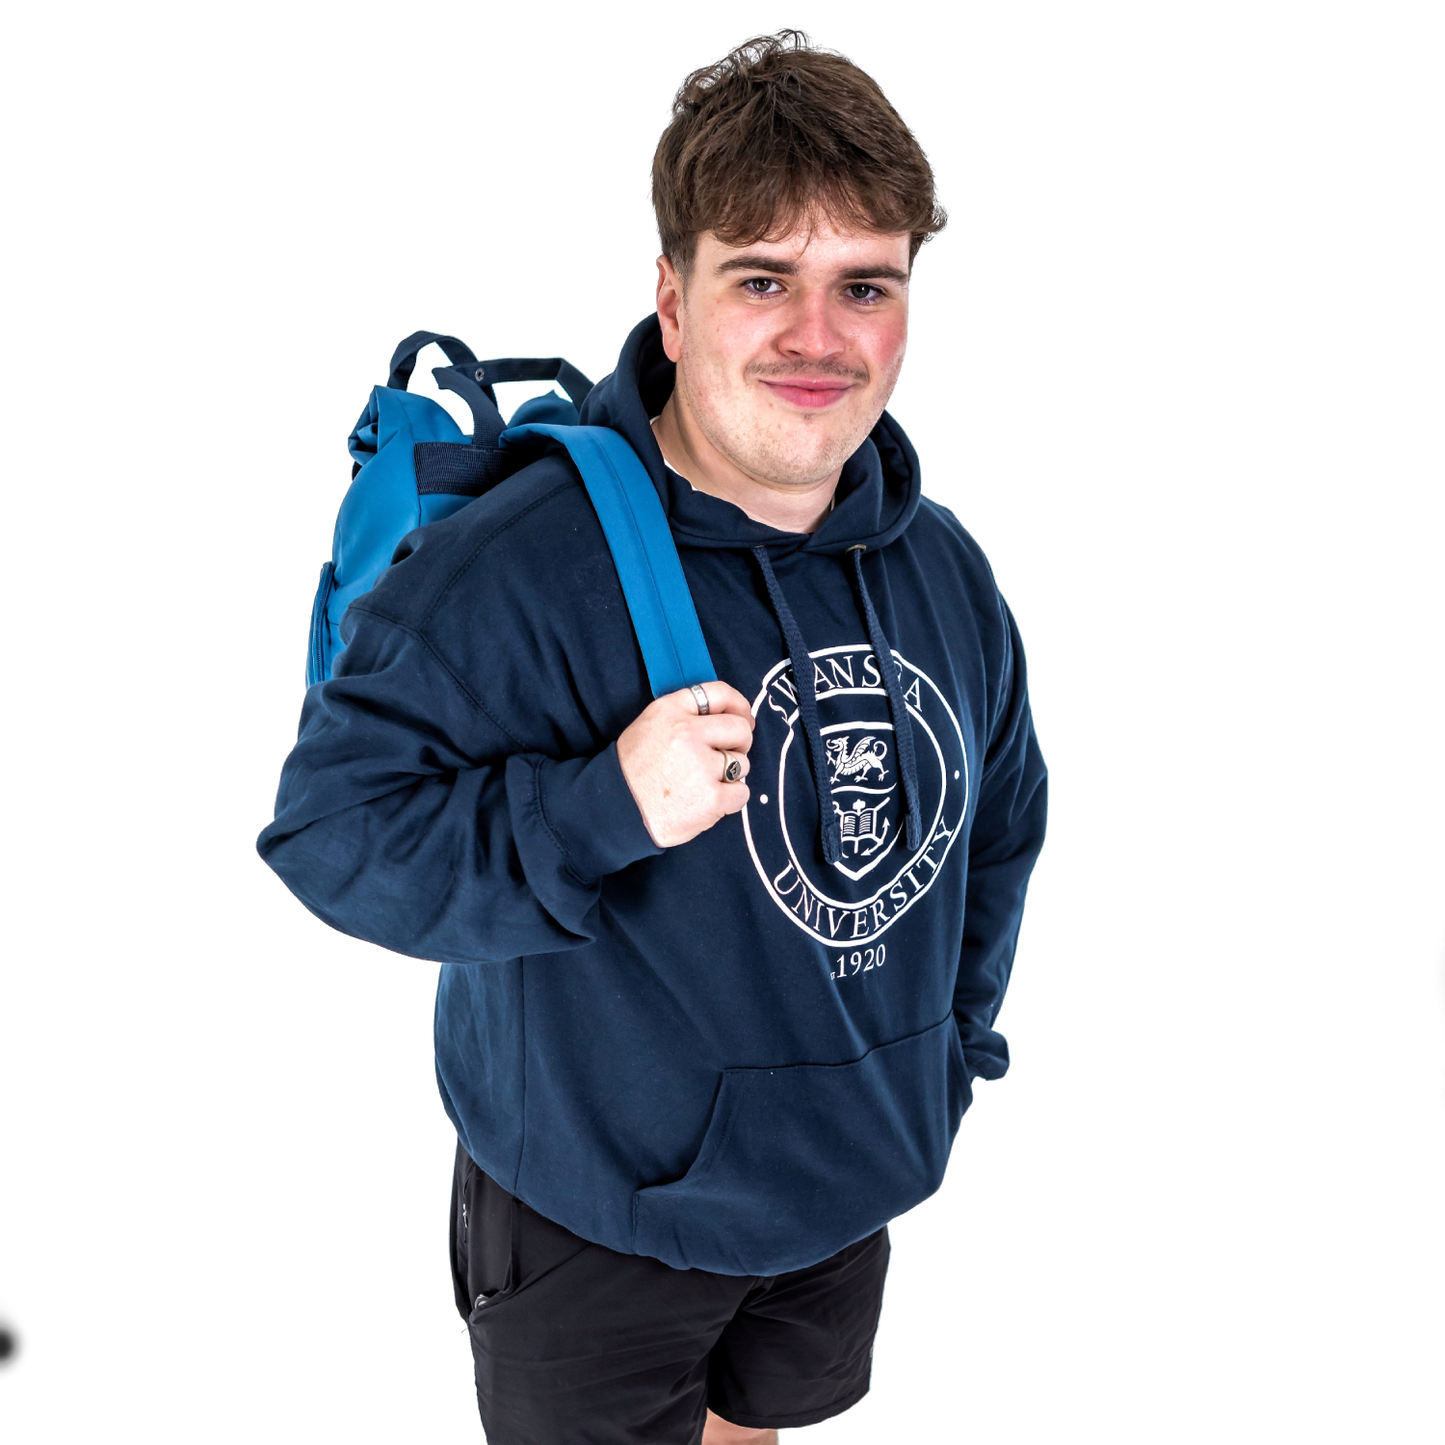 Swansea University Backpack - Recycled Twin Handle